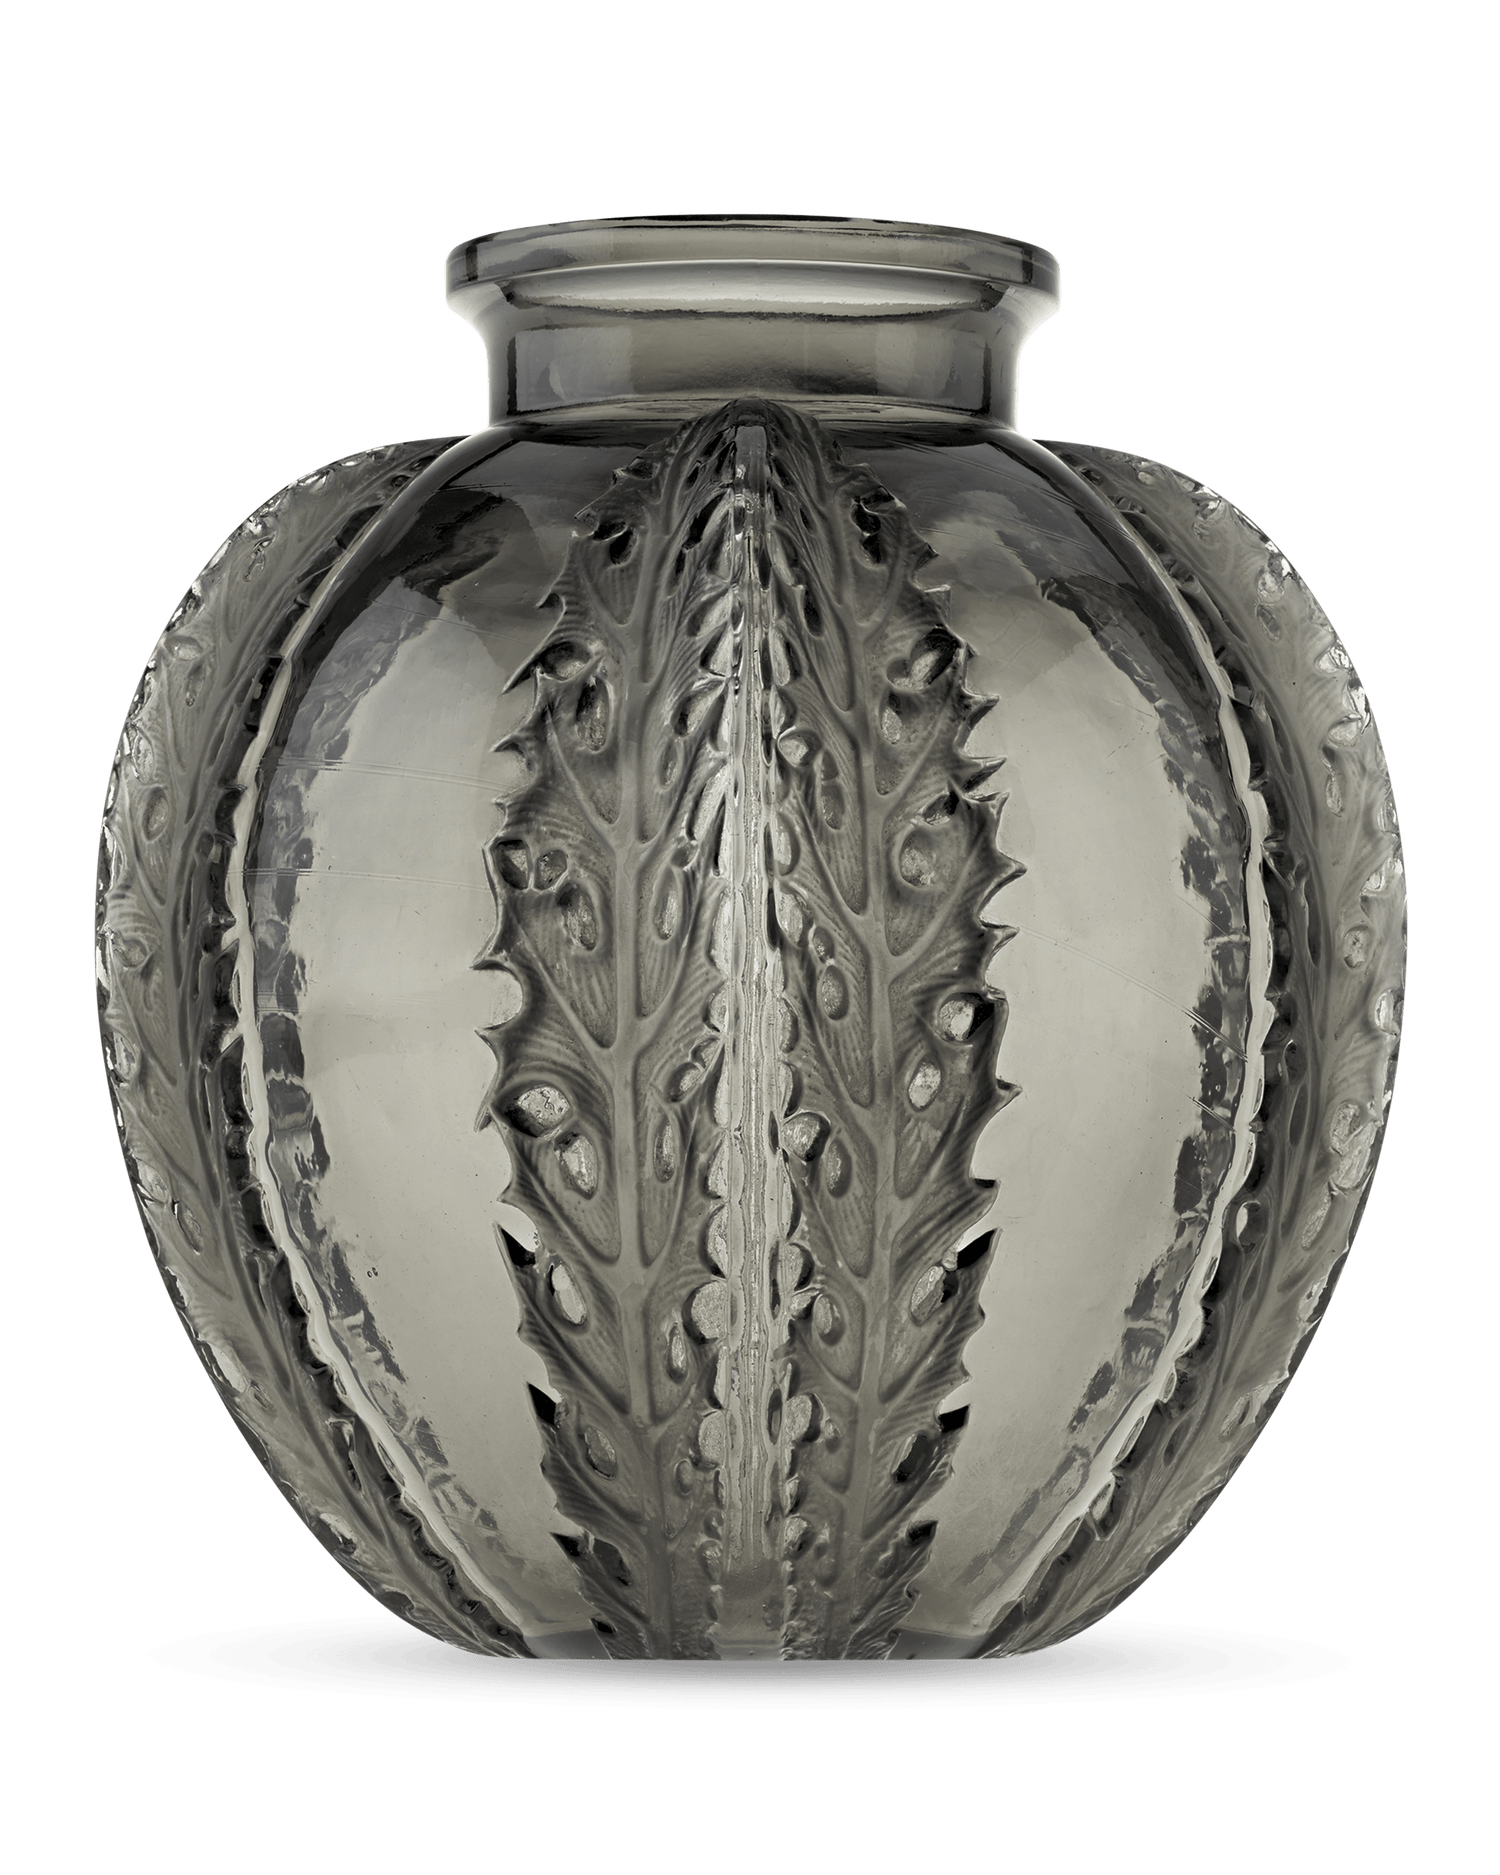 Chardons Vase by René Lalique